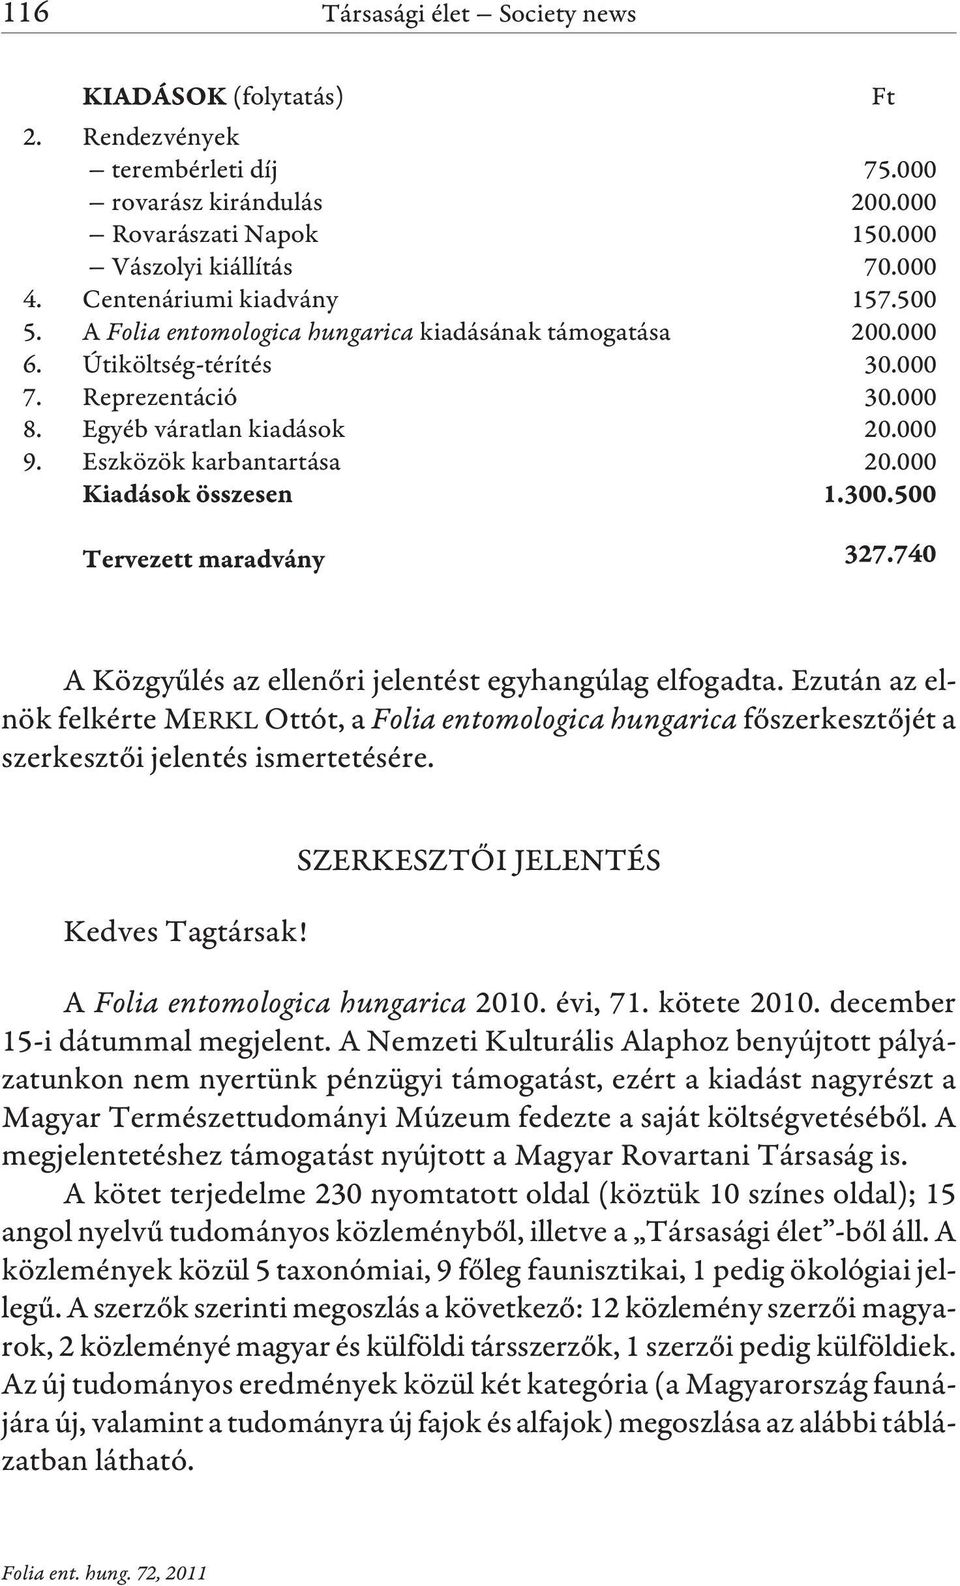 000 A Közgyûlés az ellenõri jelentést egyhangúlag elfogadta. Ezután az elnök felkérte MERKL Ottót, a Folia entomologica hungarica fõszerkesztõjét a szerkesztõi jelentés ismertetésére.